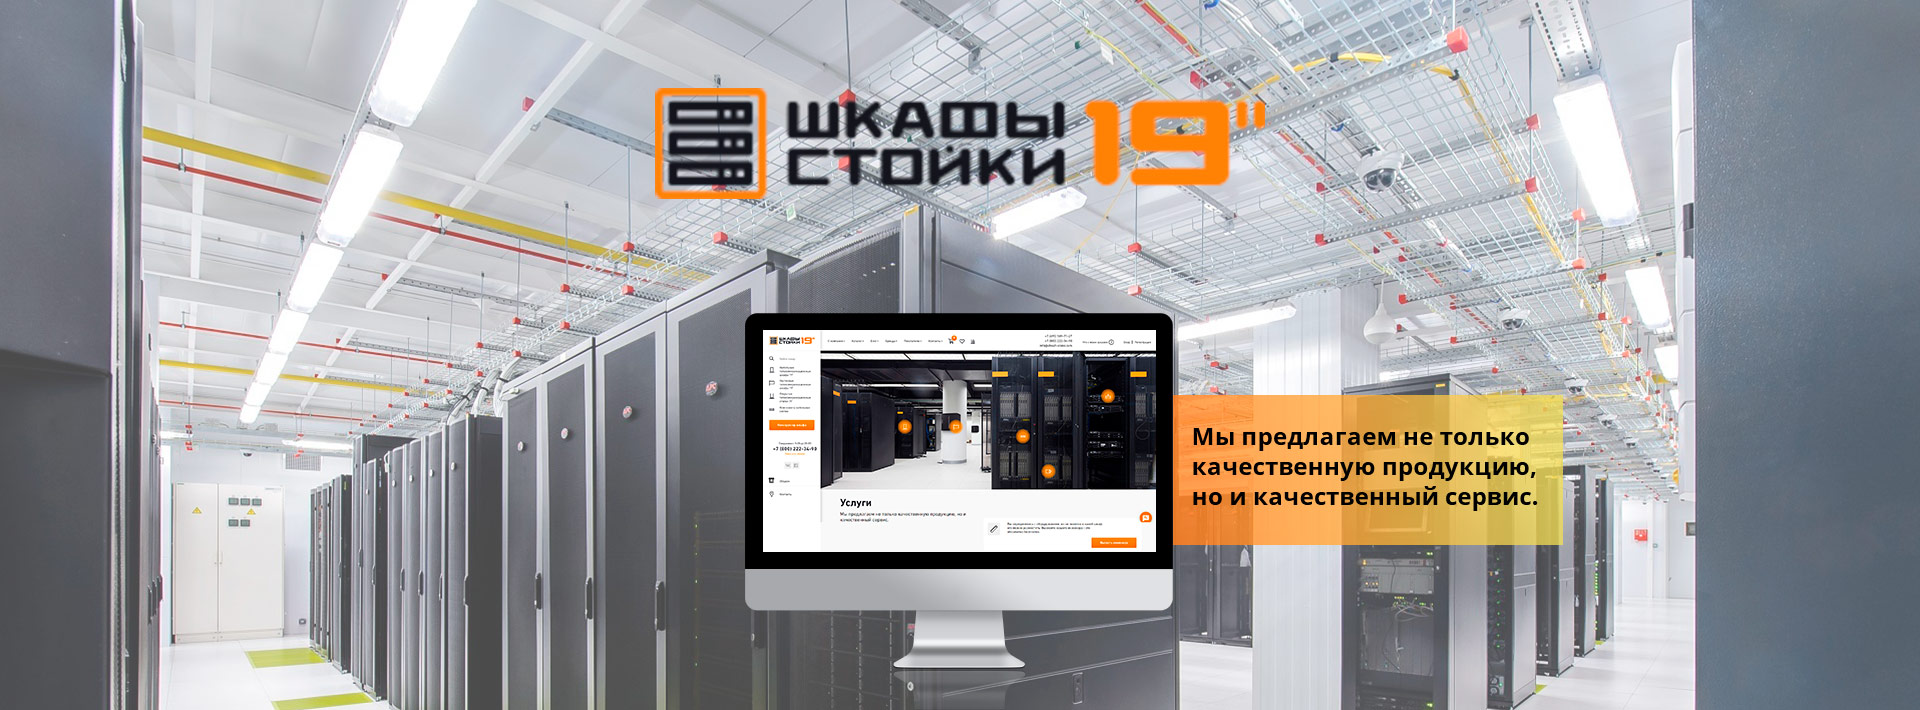 Создание сайтов в москве под ключ двигаться программа создание сайта шаблоны